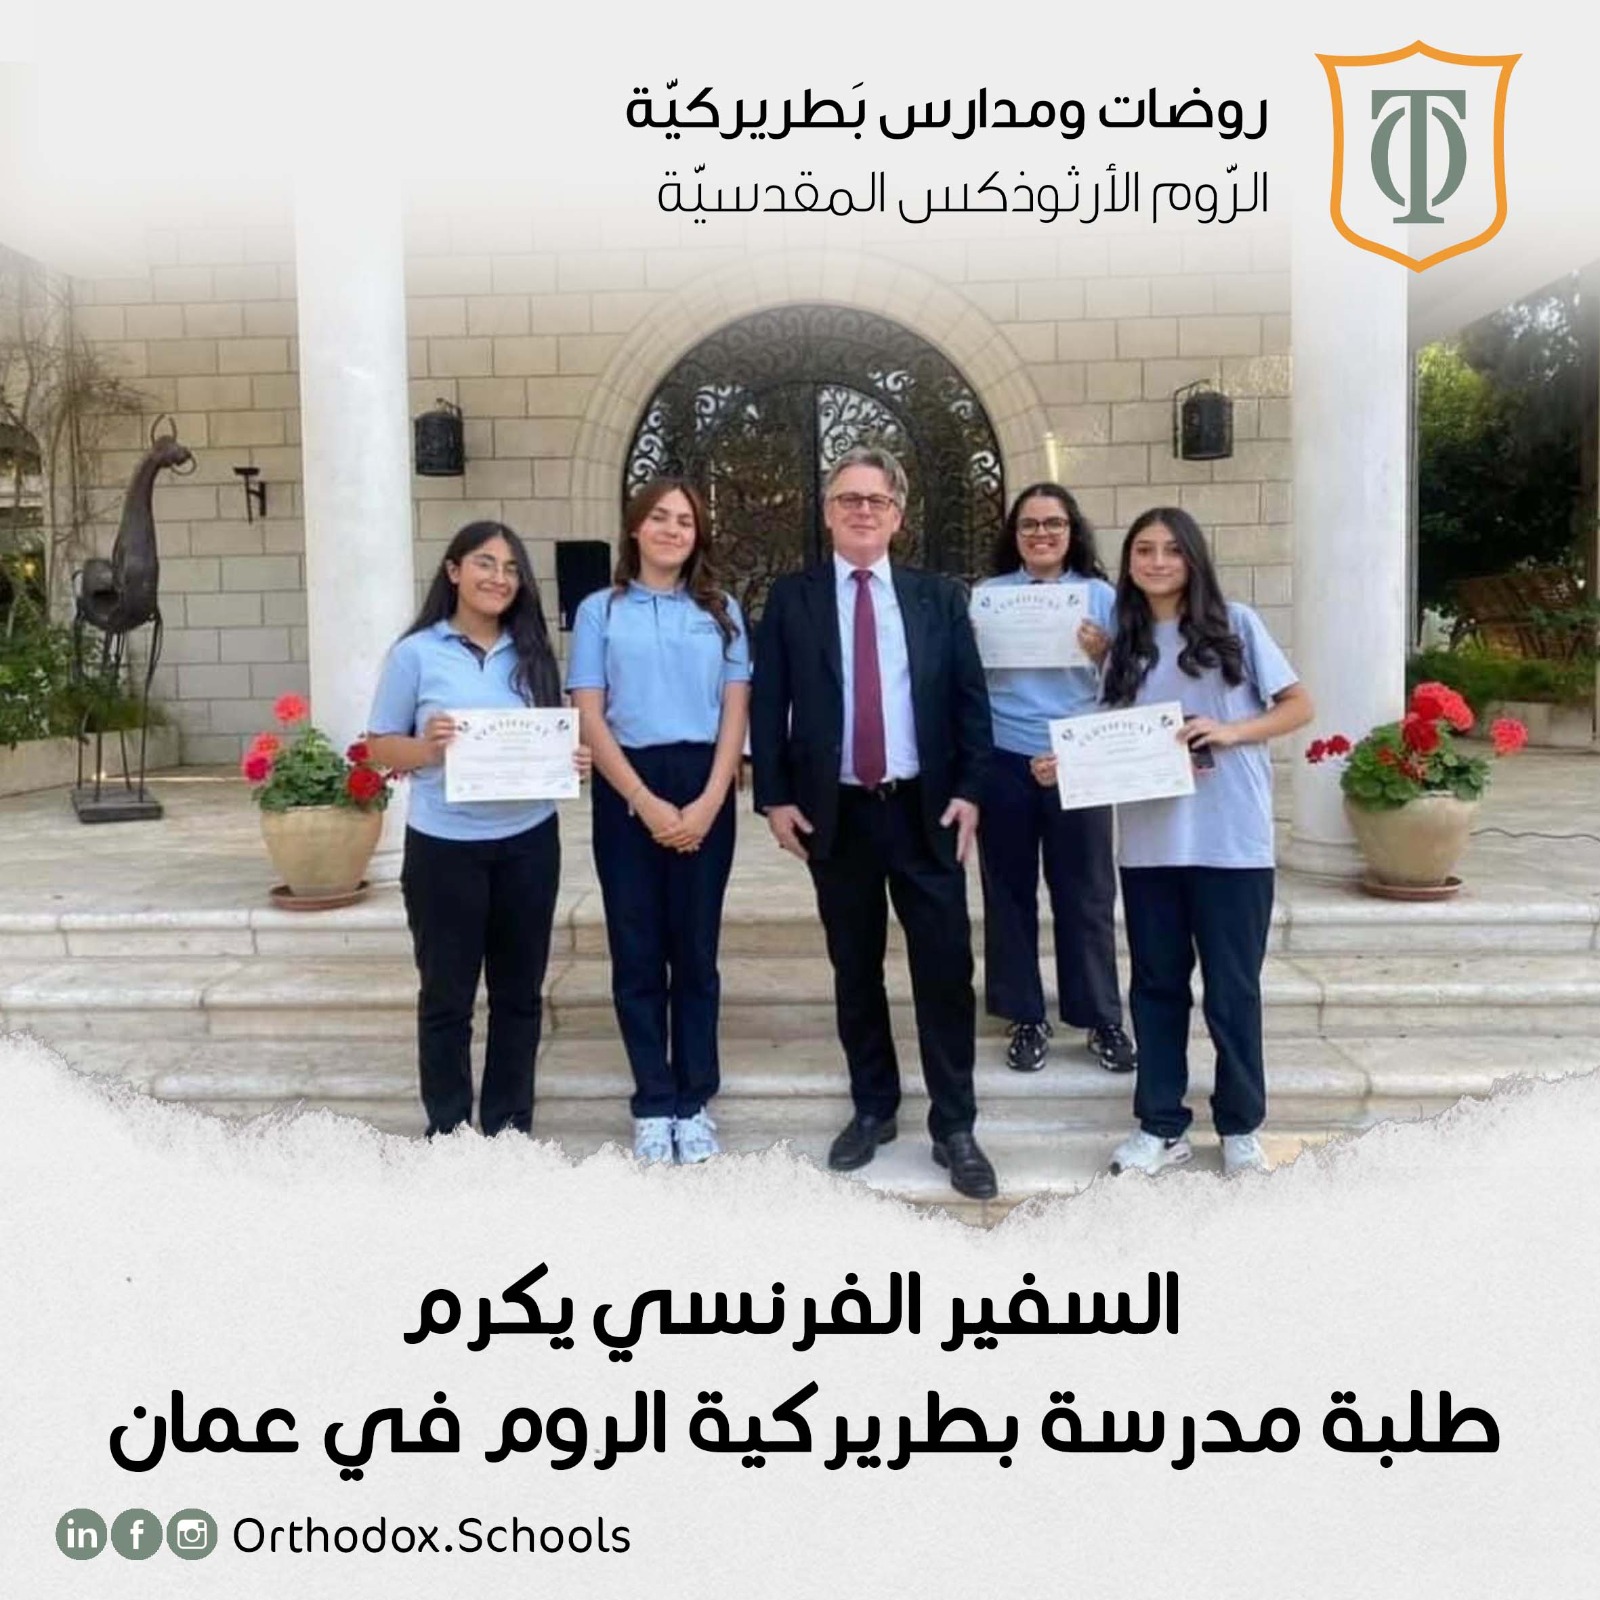 السفير الفرنسي يكرم طلبة مدرسة بطريركية الروم في عمان